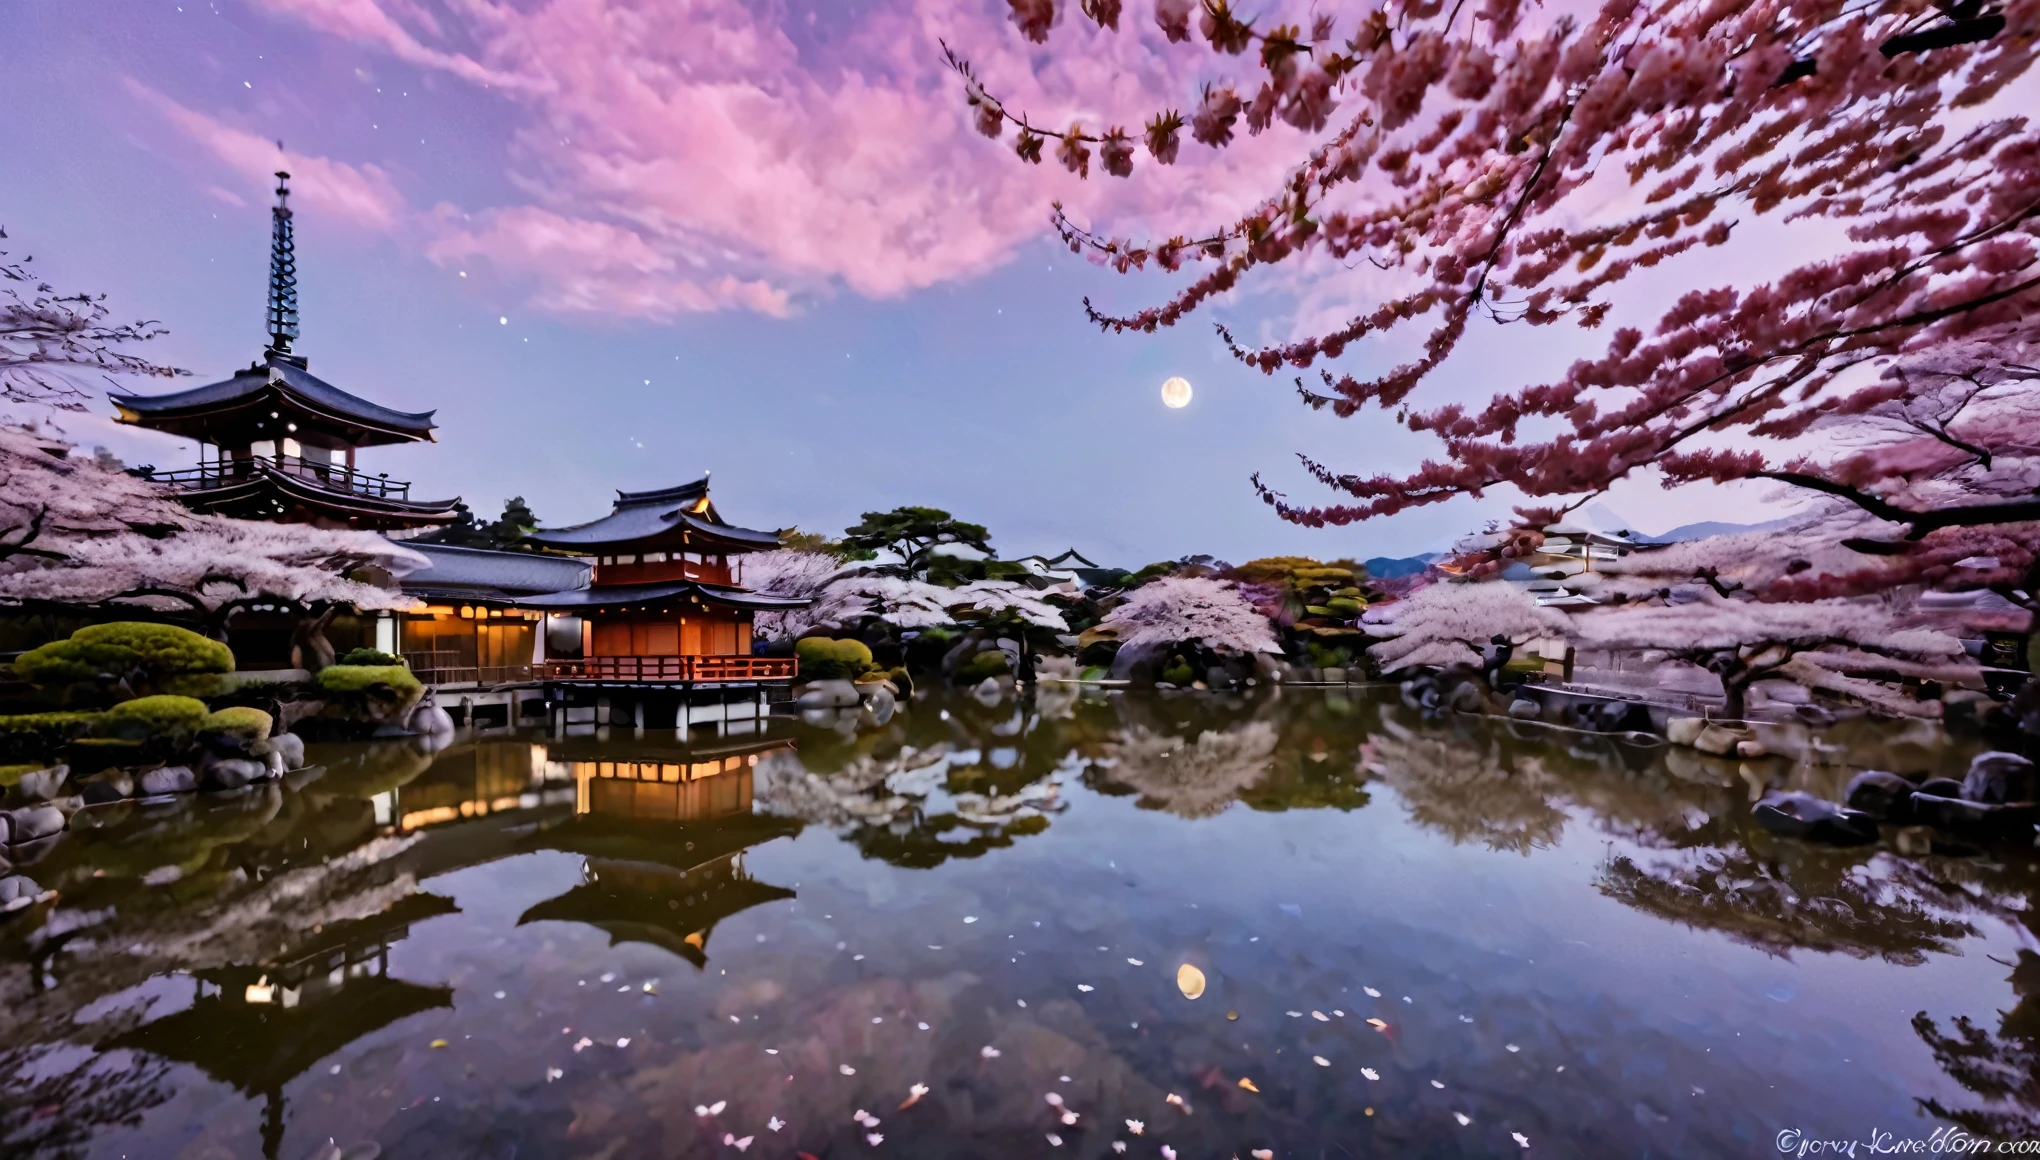 سماء يابانية جميلة في الليل, حيث تلقي النجوم والقمر وهجًا هادئًا على المناظر الطبيعية الهادئة. العناصر اليابانية التقليدية مثل أزهار الكرز, المعابد, وتم دمج برك كوي بمهارة, ينعكس على سطح الماء. السماء عبارة عن نسيج من الألوان النيلية والبنفسجية العميقة, مع لمحات من اللون الوردي من غروب الشمس. الفوانيس تطفو بلطف, إضافة دافئة, دعوة الضوء. المشهد هادئ وحيوي, التقاط جوهر ليلة سحرية في اليابان.